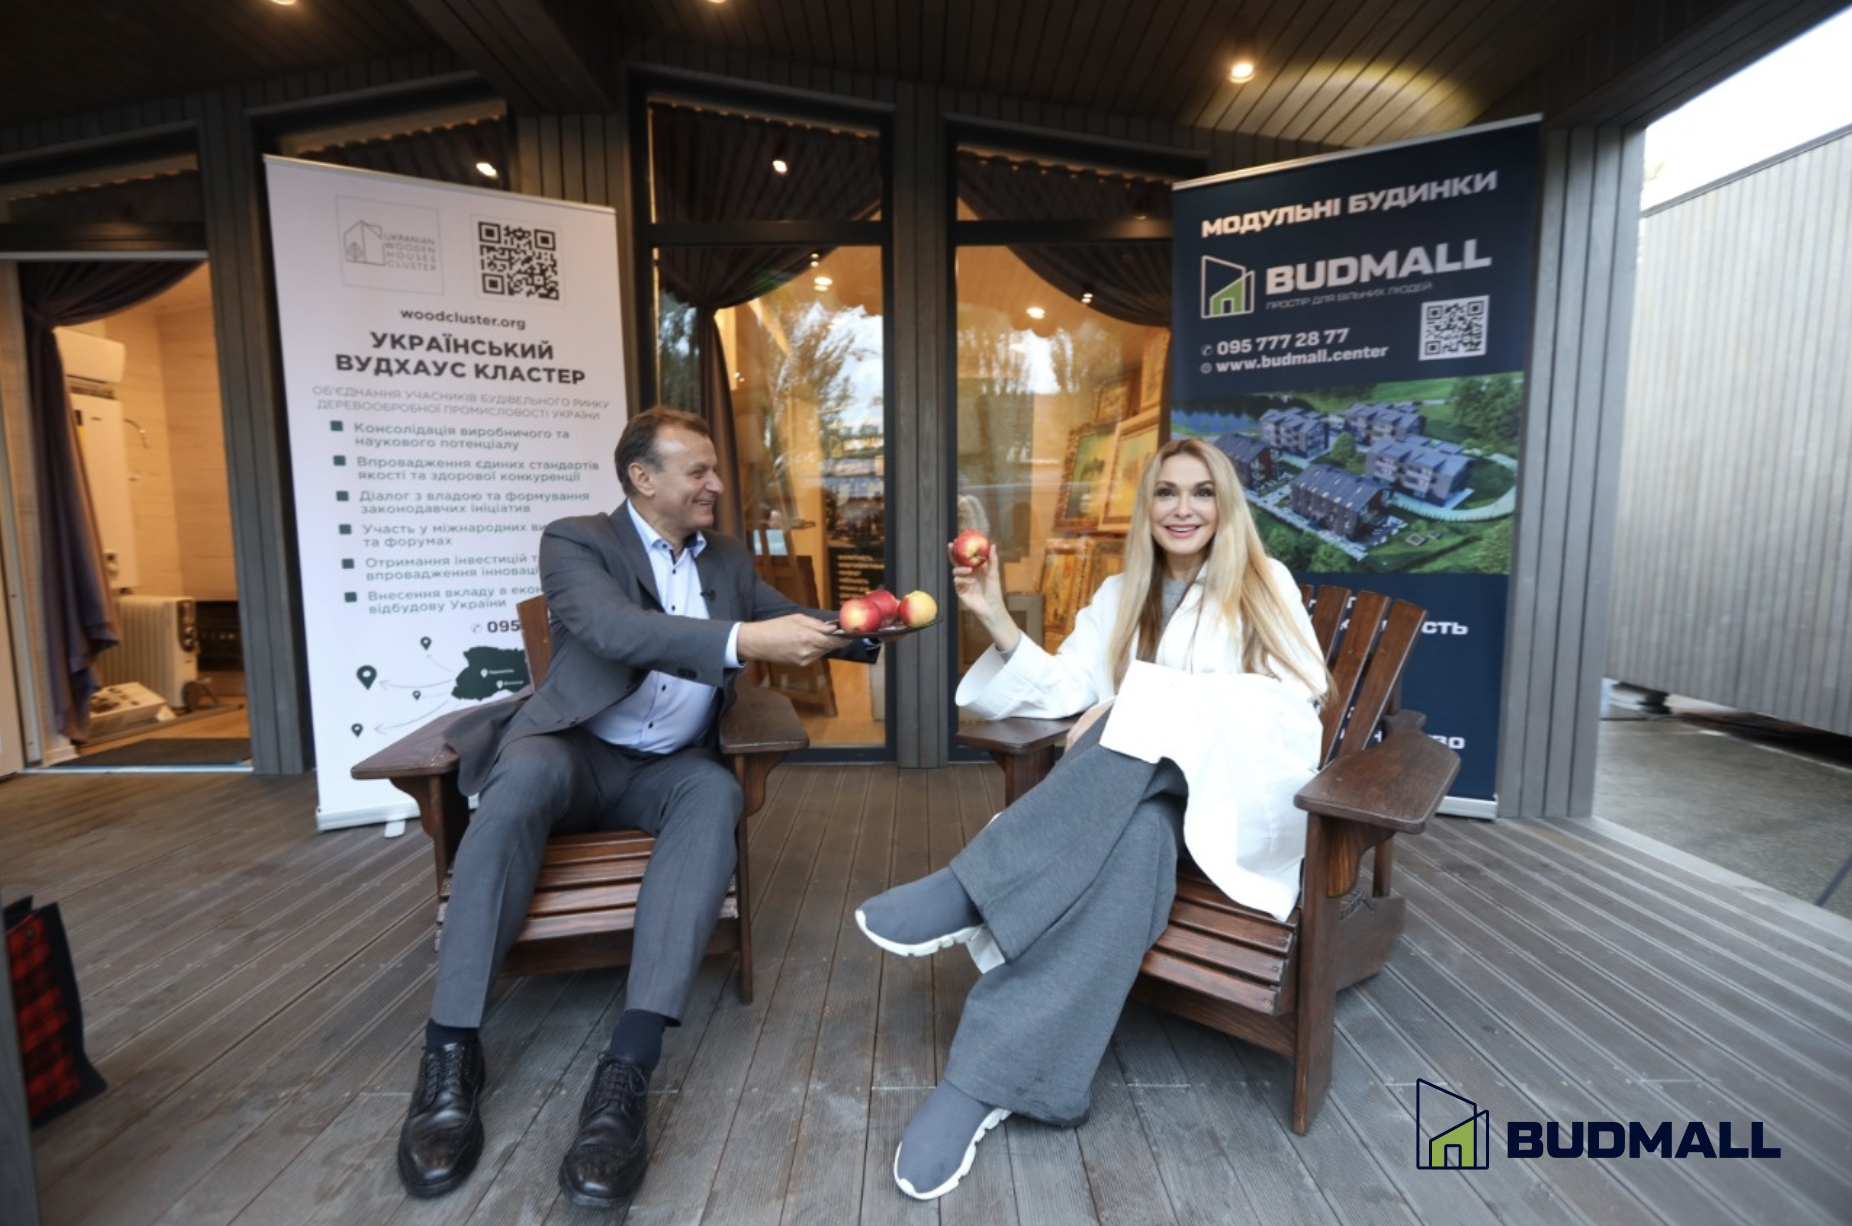 Открытие Budmall Center в Киеве: презентация решений быстрого строительства — фото 3